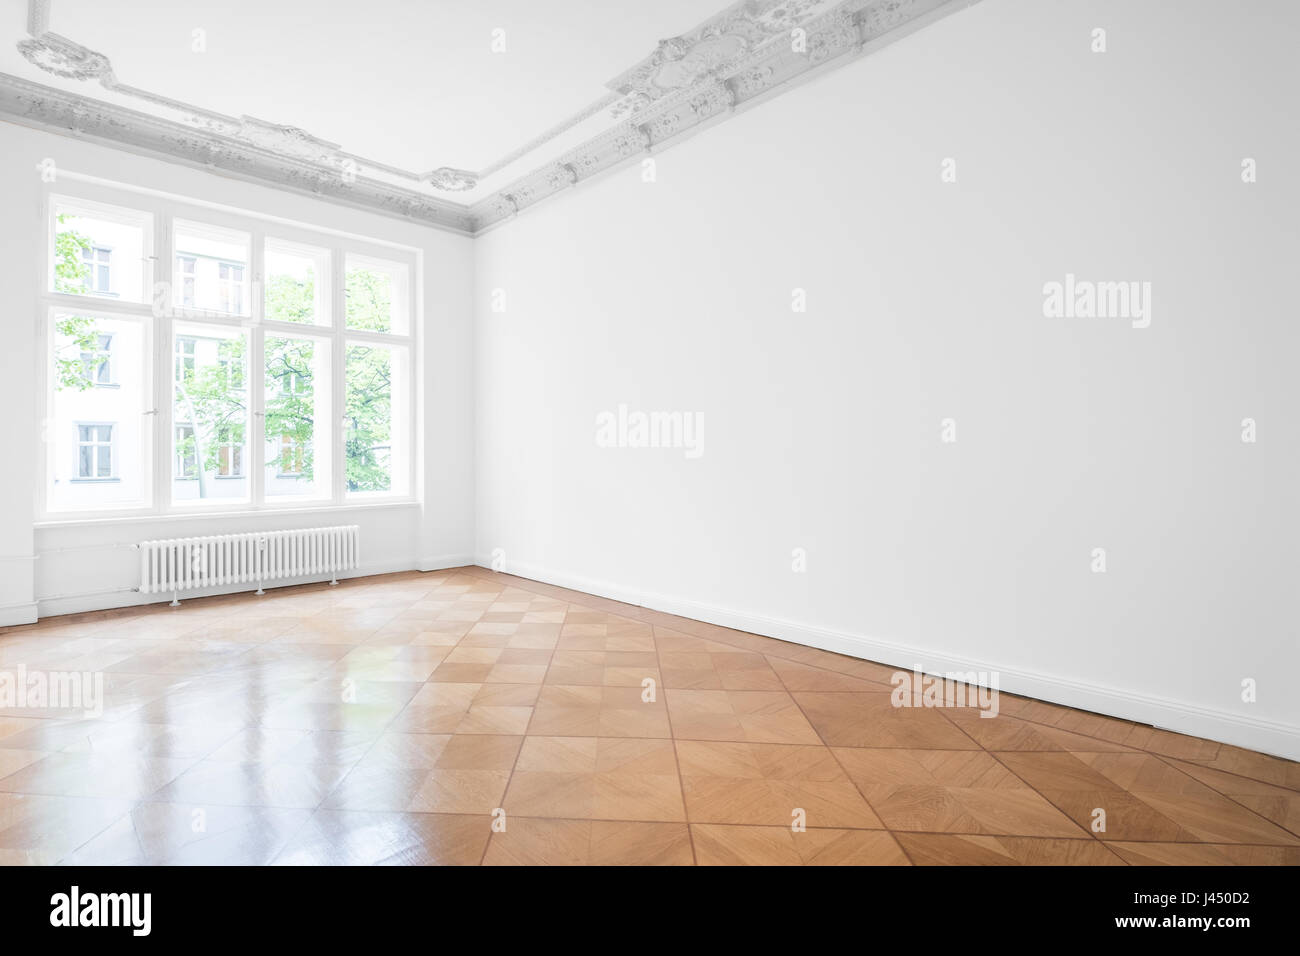 Stanza vuota con pavimenti in parquet , bianche pareti e soffitto in stucco - Nuovo appartamento in edificio storico Foto Stock